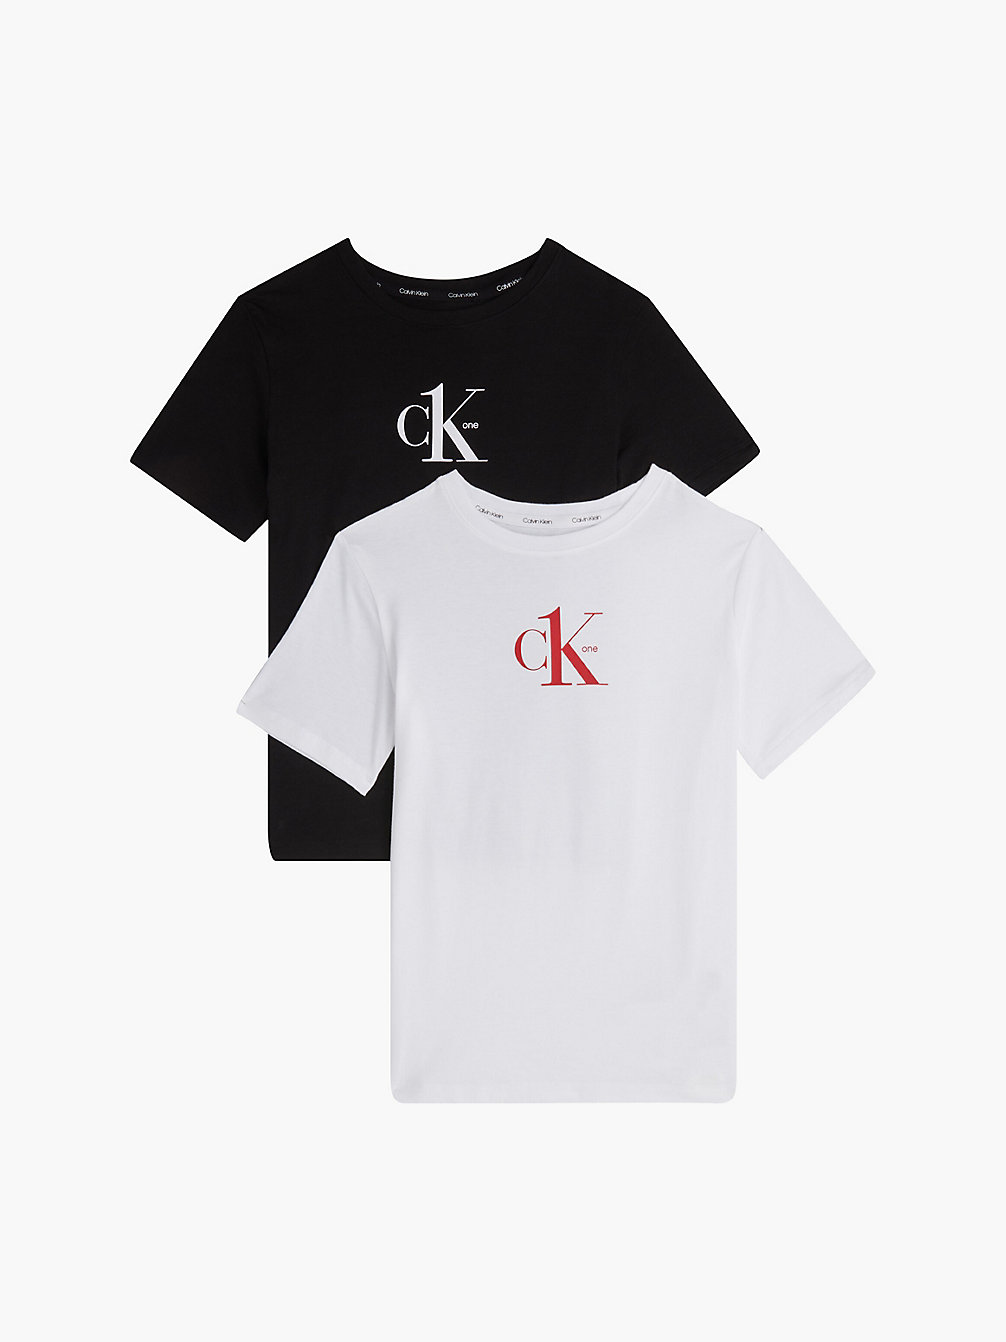 PVHBLACK/PVHWHITE > Zestaw 2 Par T-Shirtów Unisex - CK One > undefined kids unisex - Calvin Klein